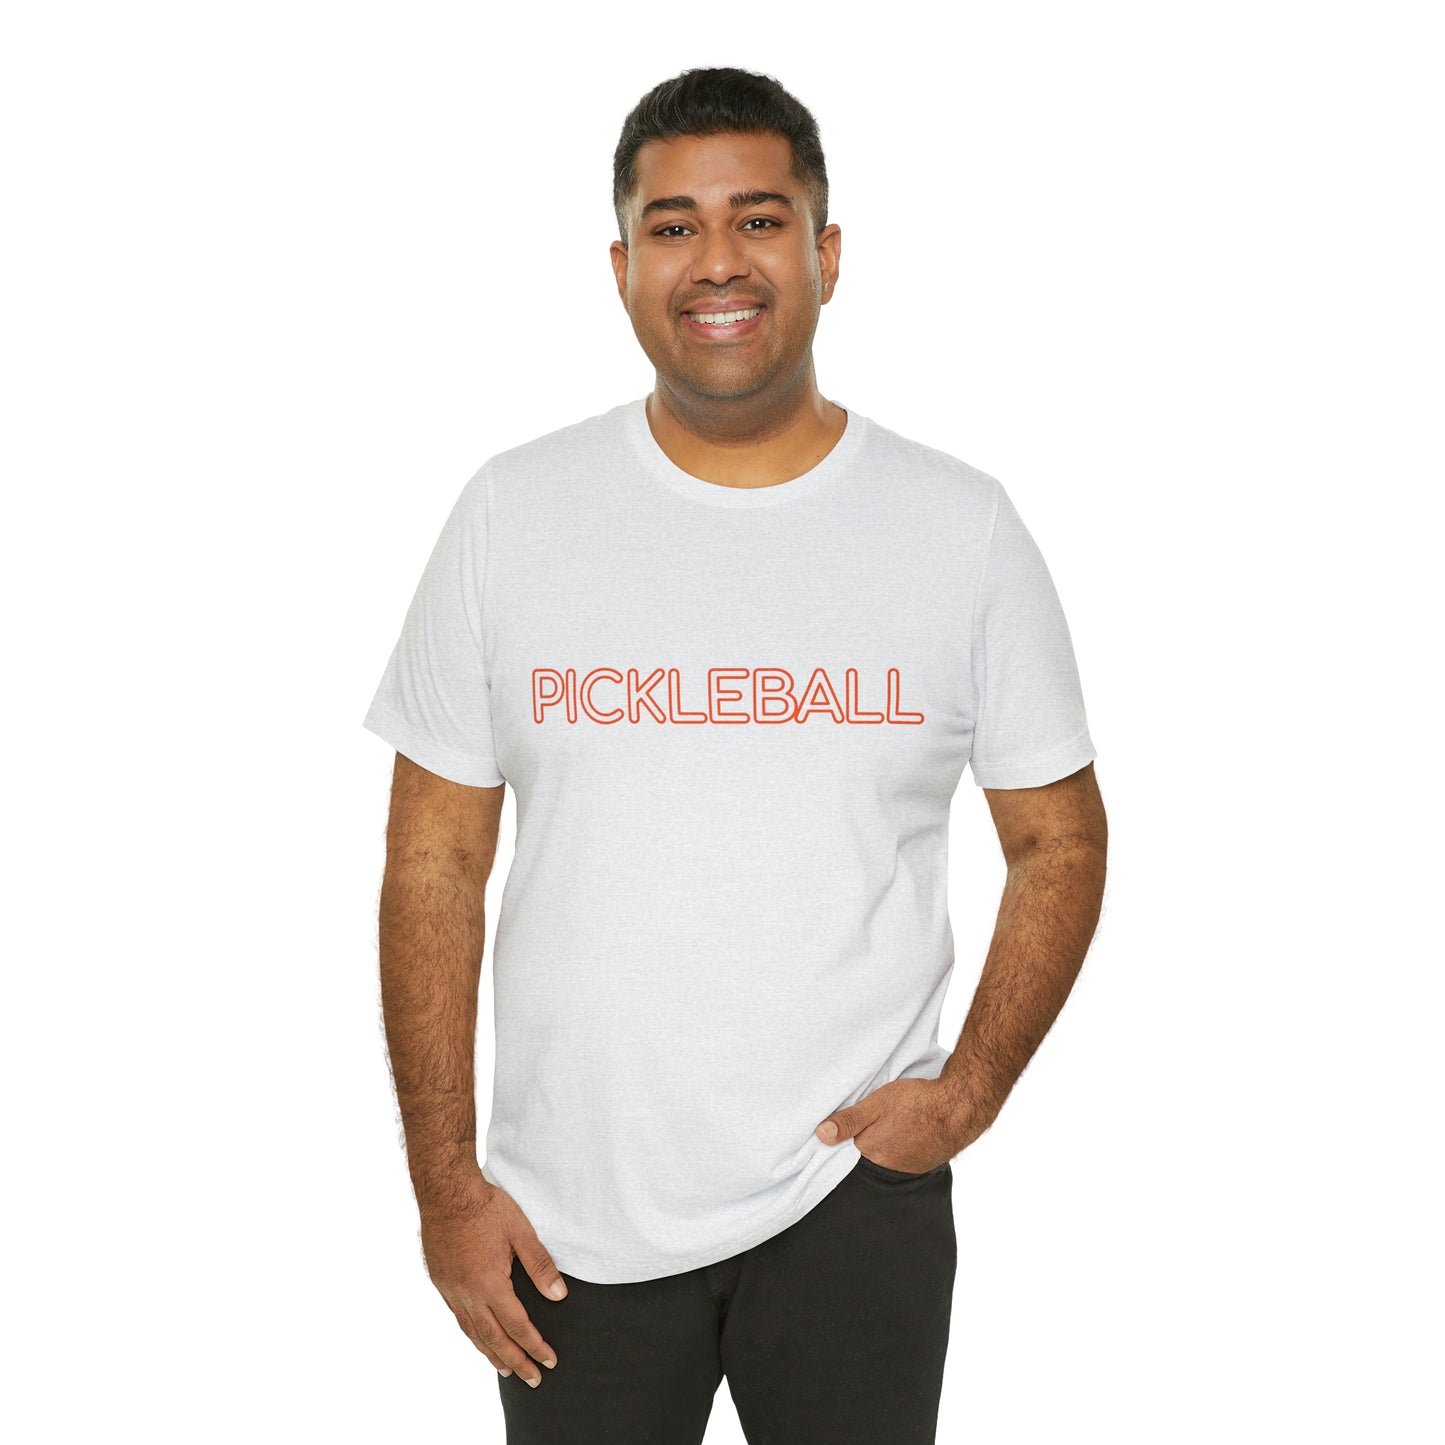 Pickleball T-Shirt for Pickleball Fans